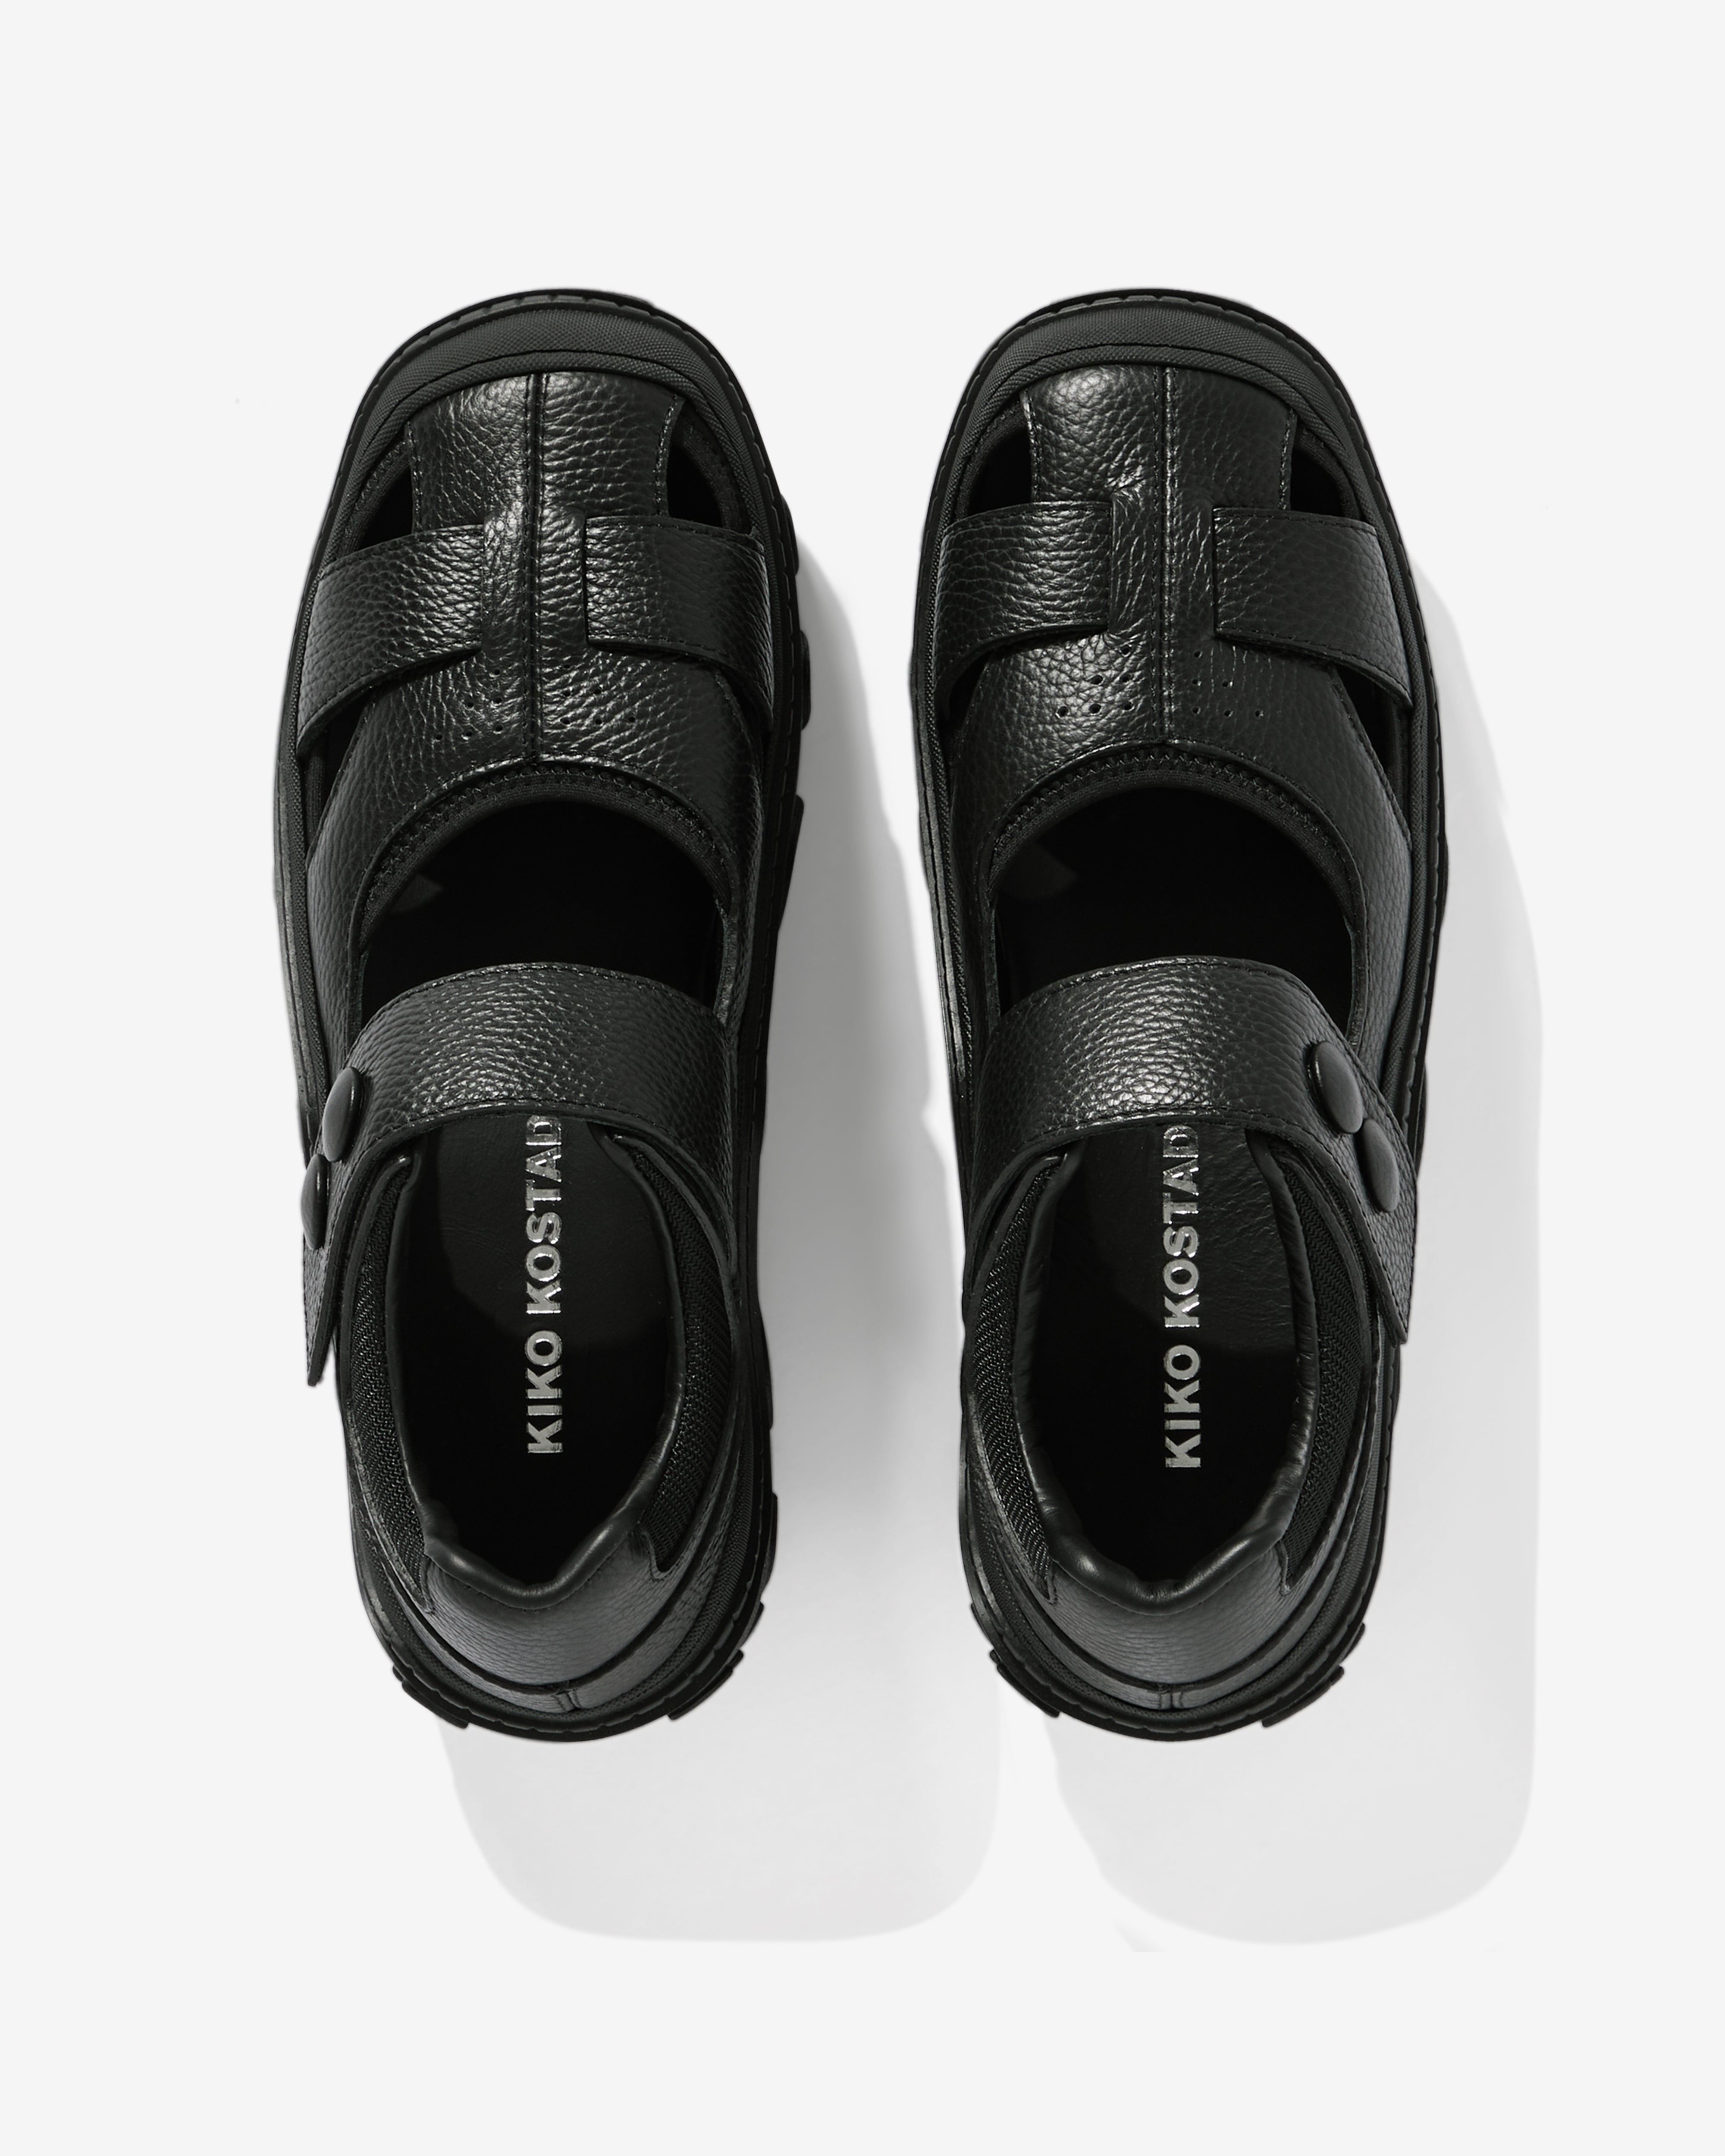 Kiko Kostadinov - Men's Sandal Hybrid - (Black Soot)